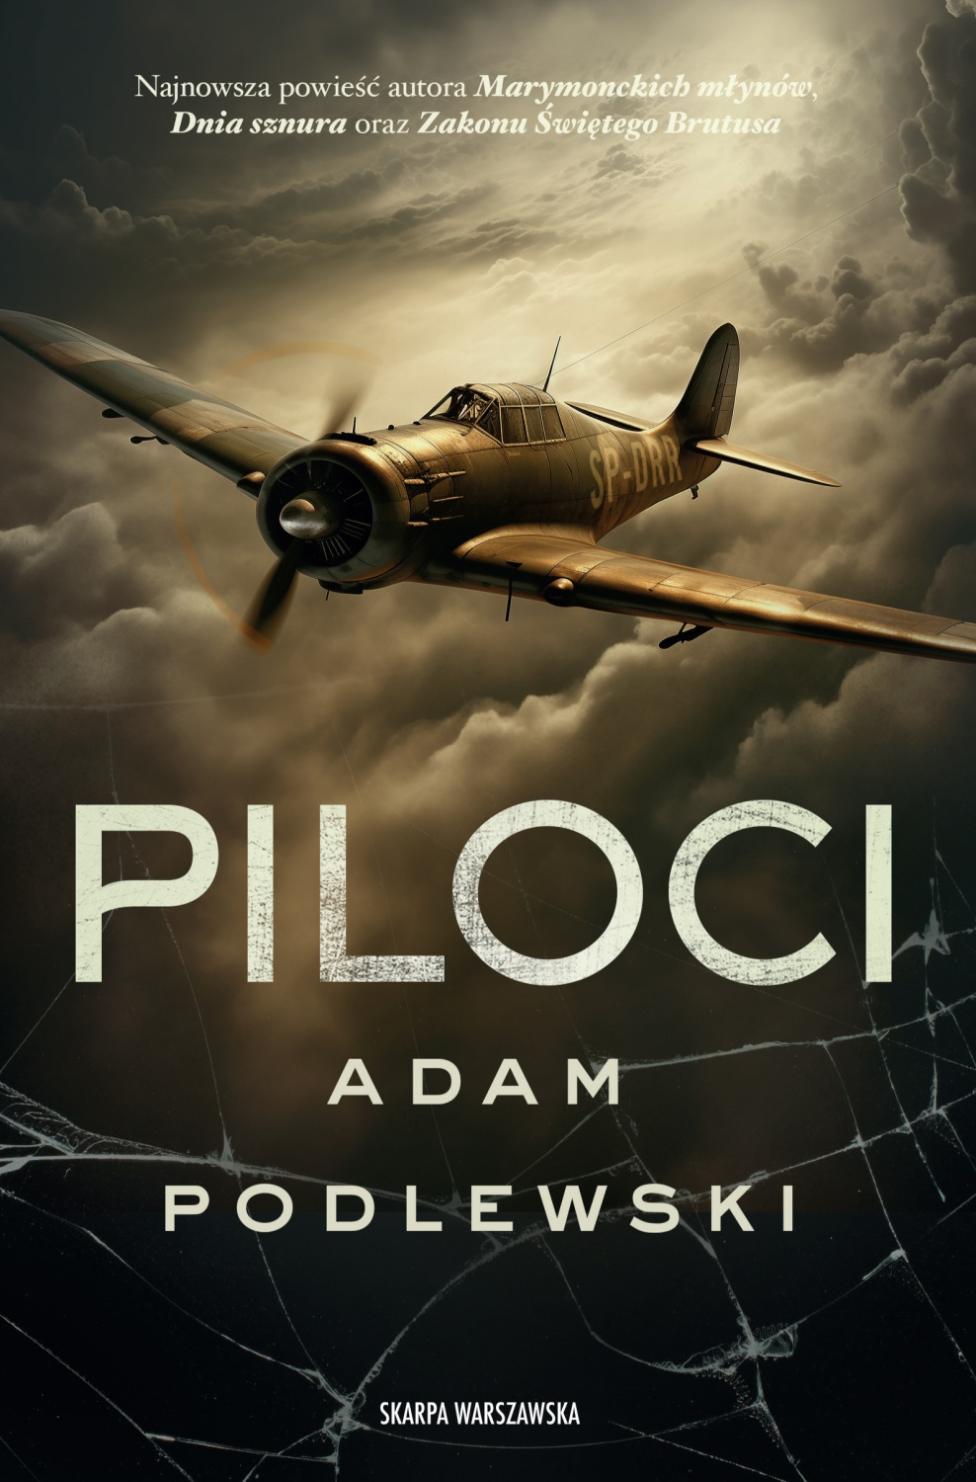 Książka "Piloci" (fot. Wydawnictwo Skarpa Warszawska)